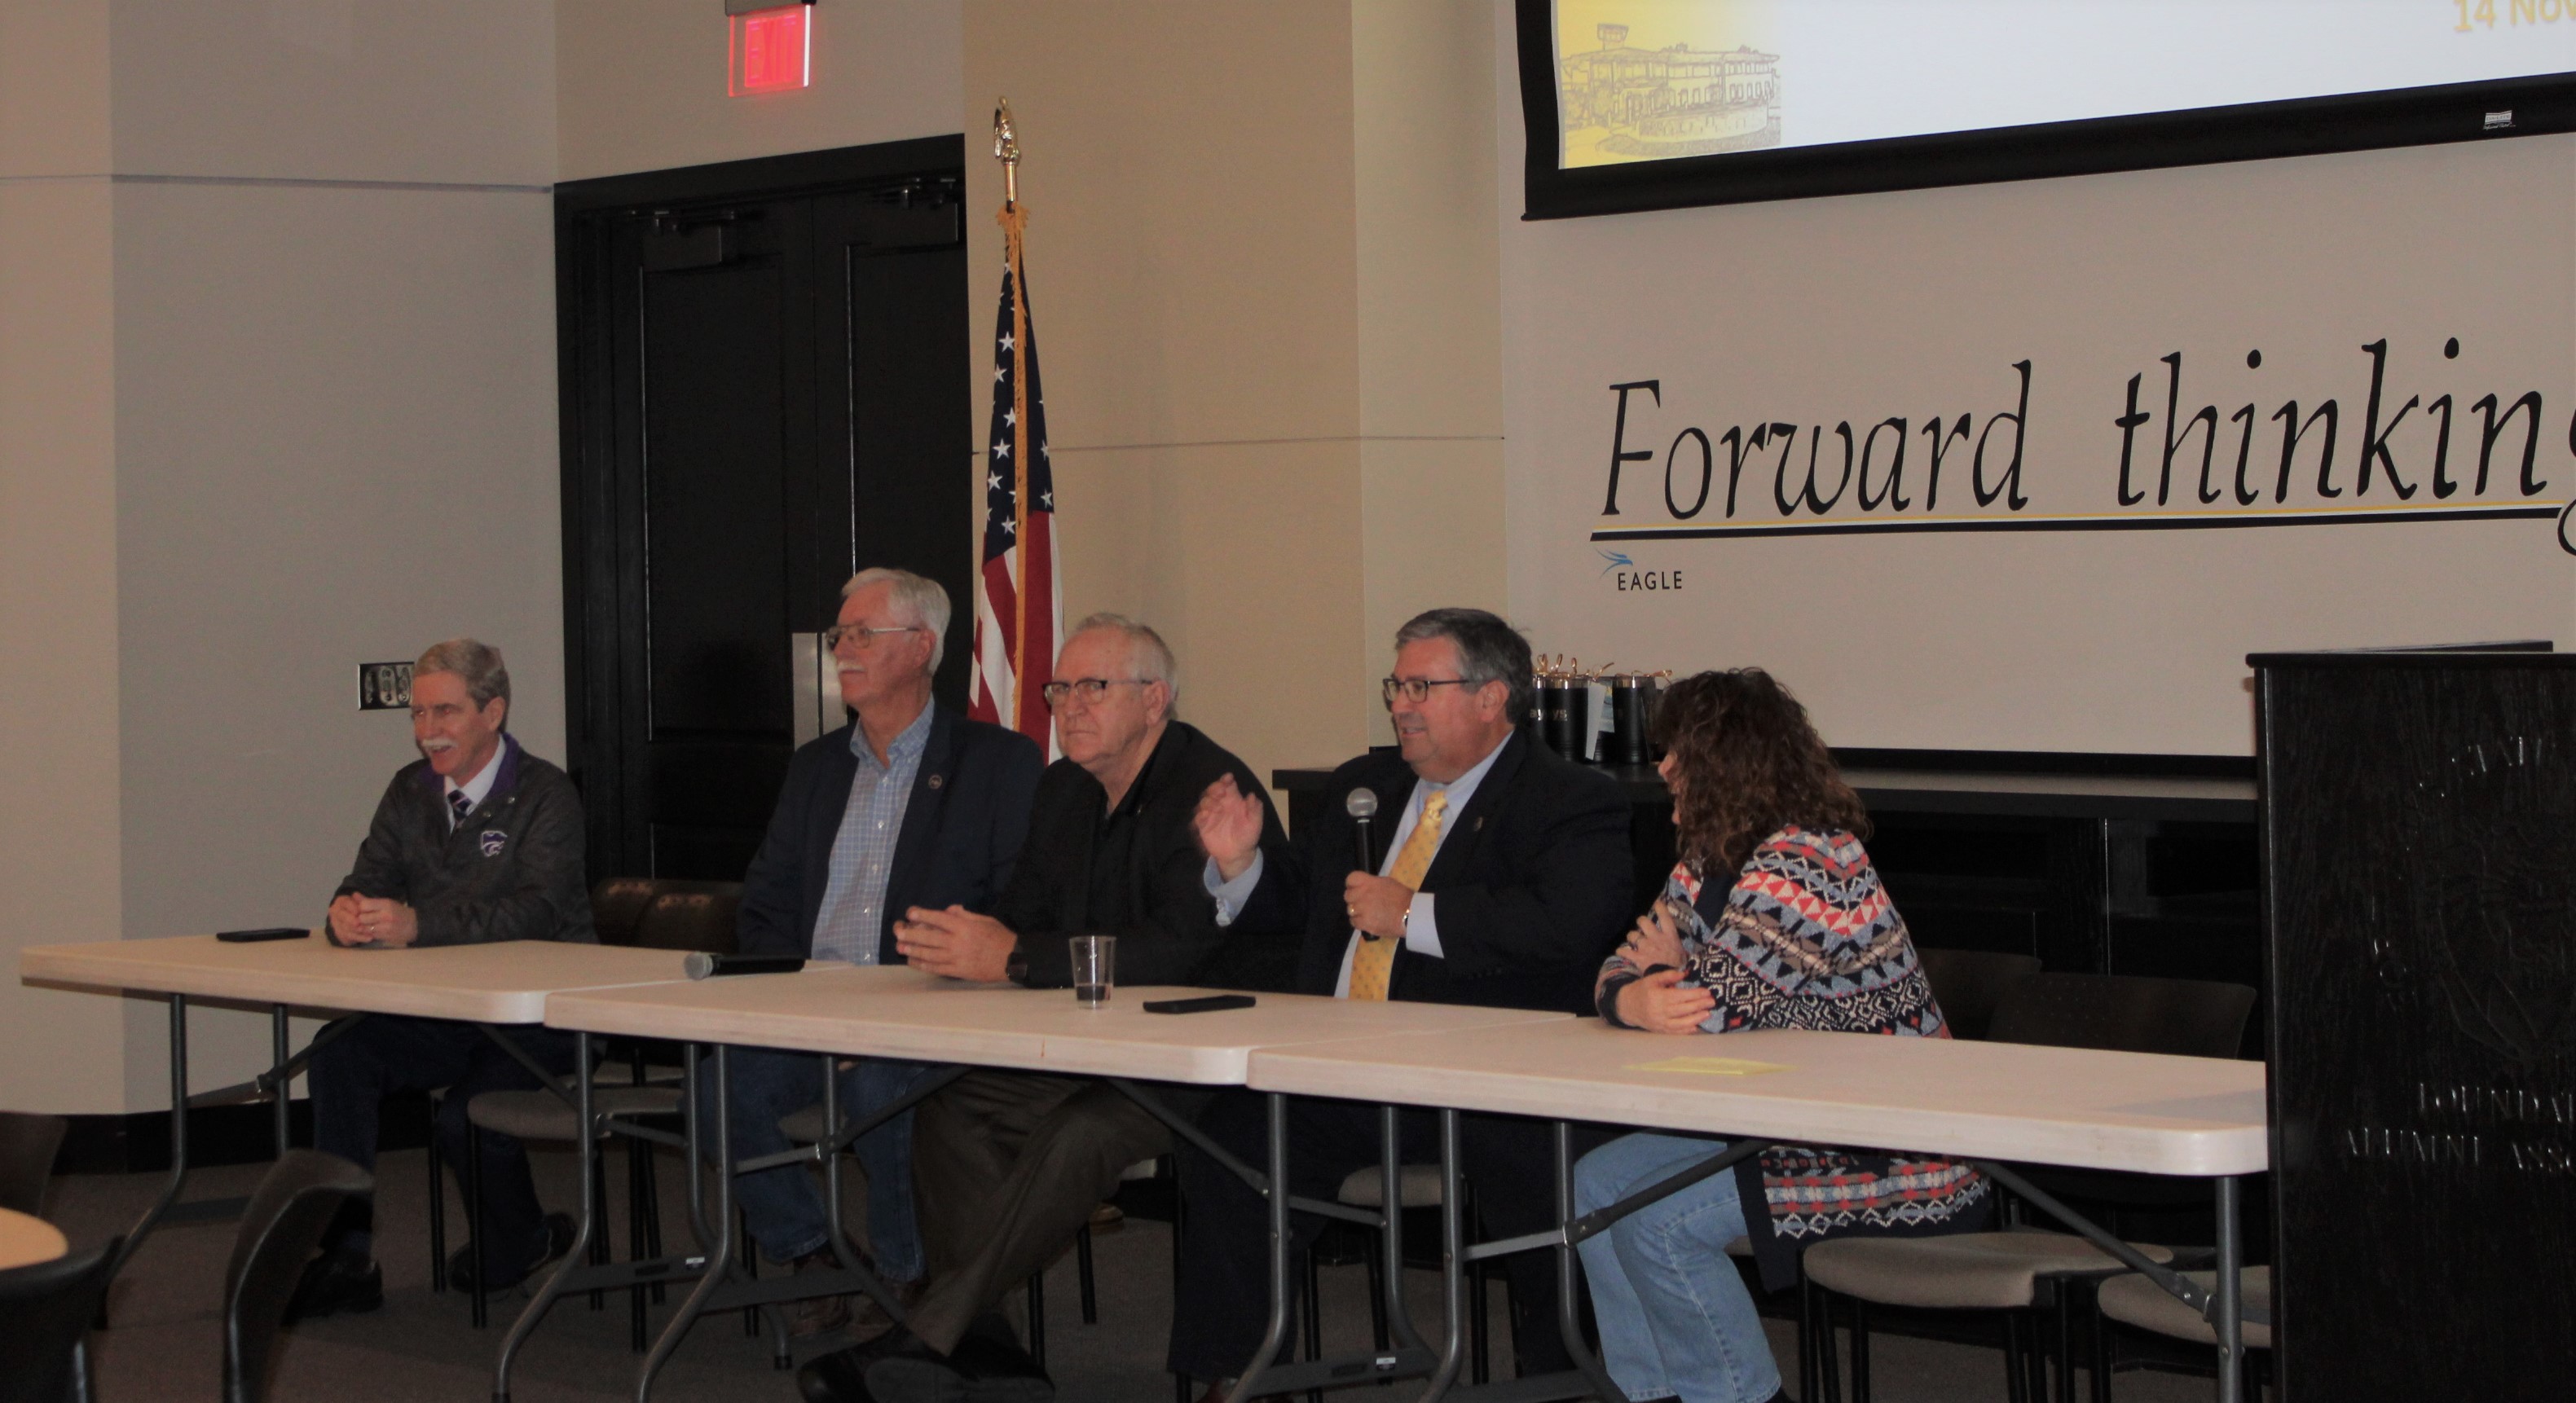 Kansas legislators discuss agricultural issues at FHSU forum.